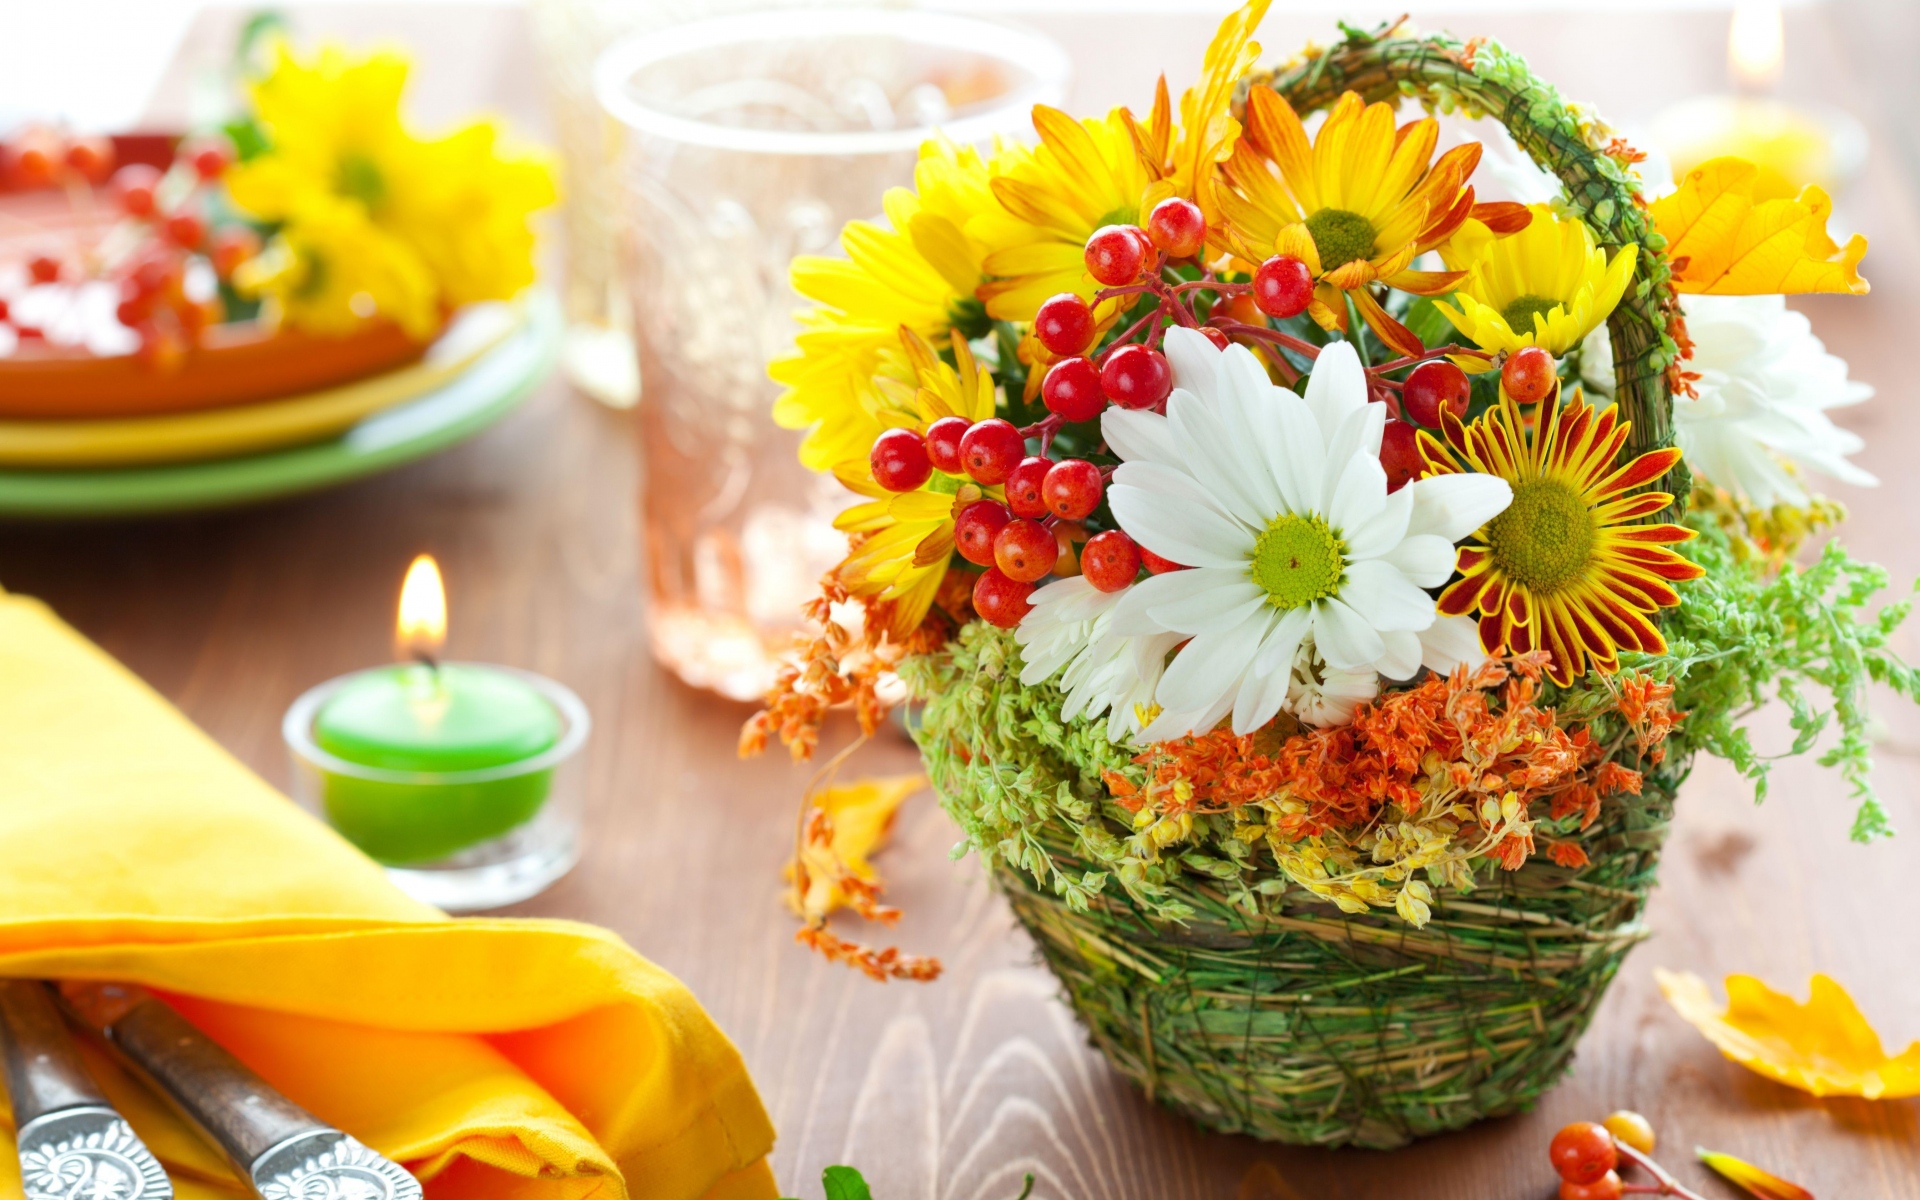 Картинки Хризантемы, цветы, фрукты, корзина, свеча, подача фото и обои на рабочий стол